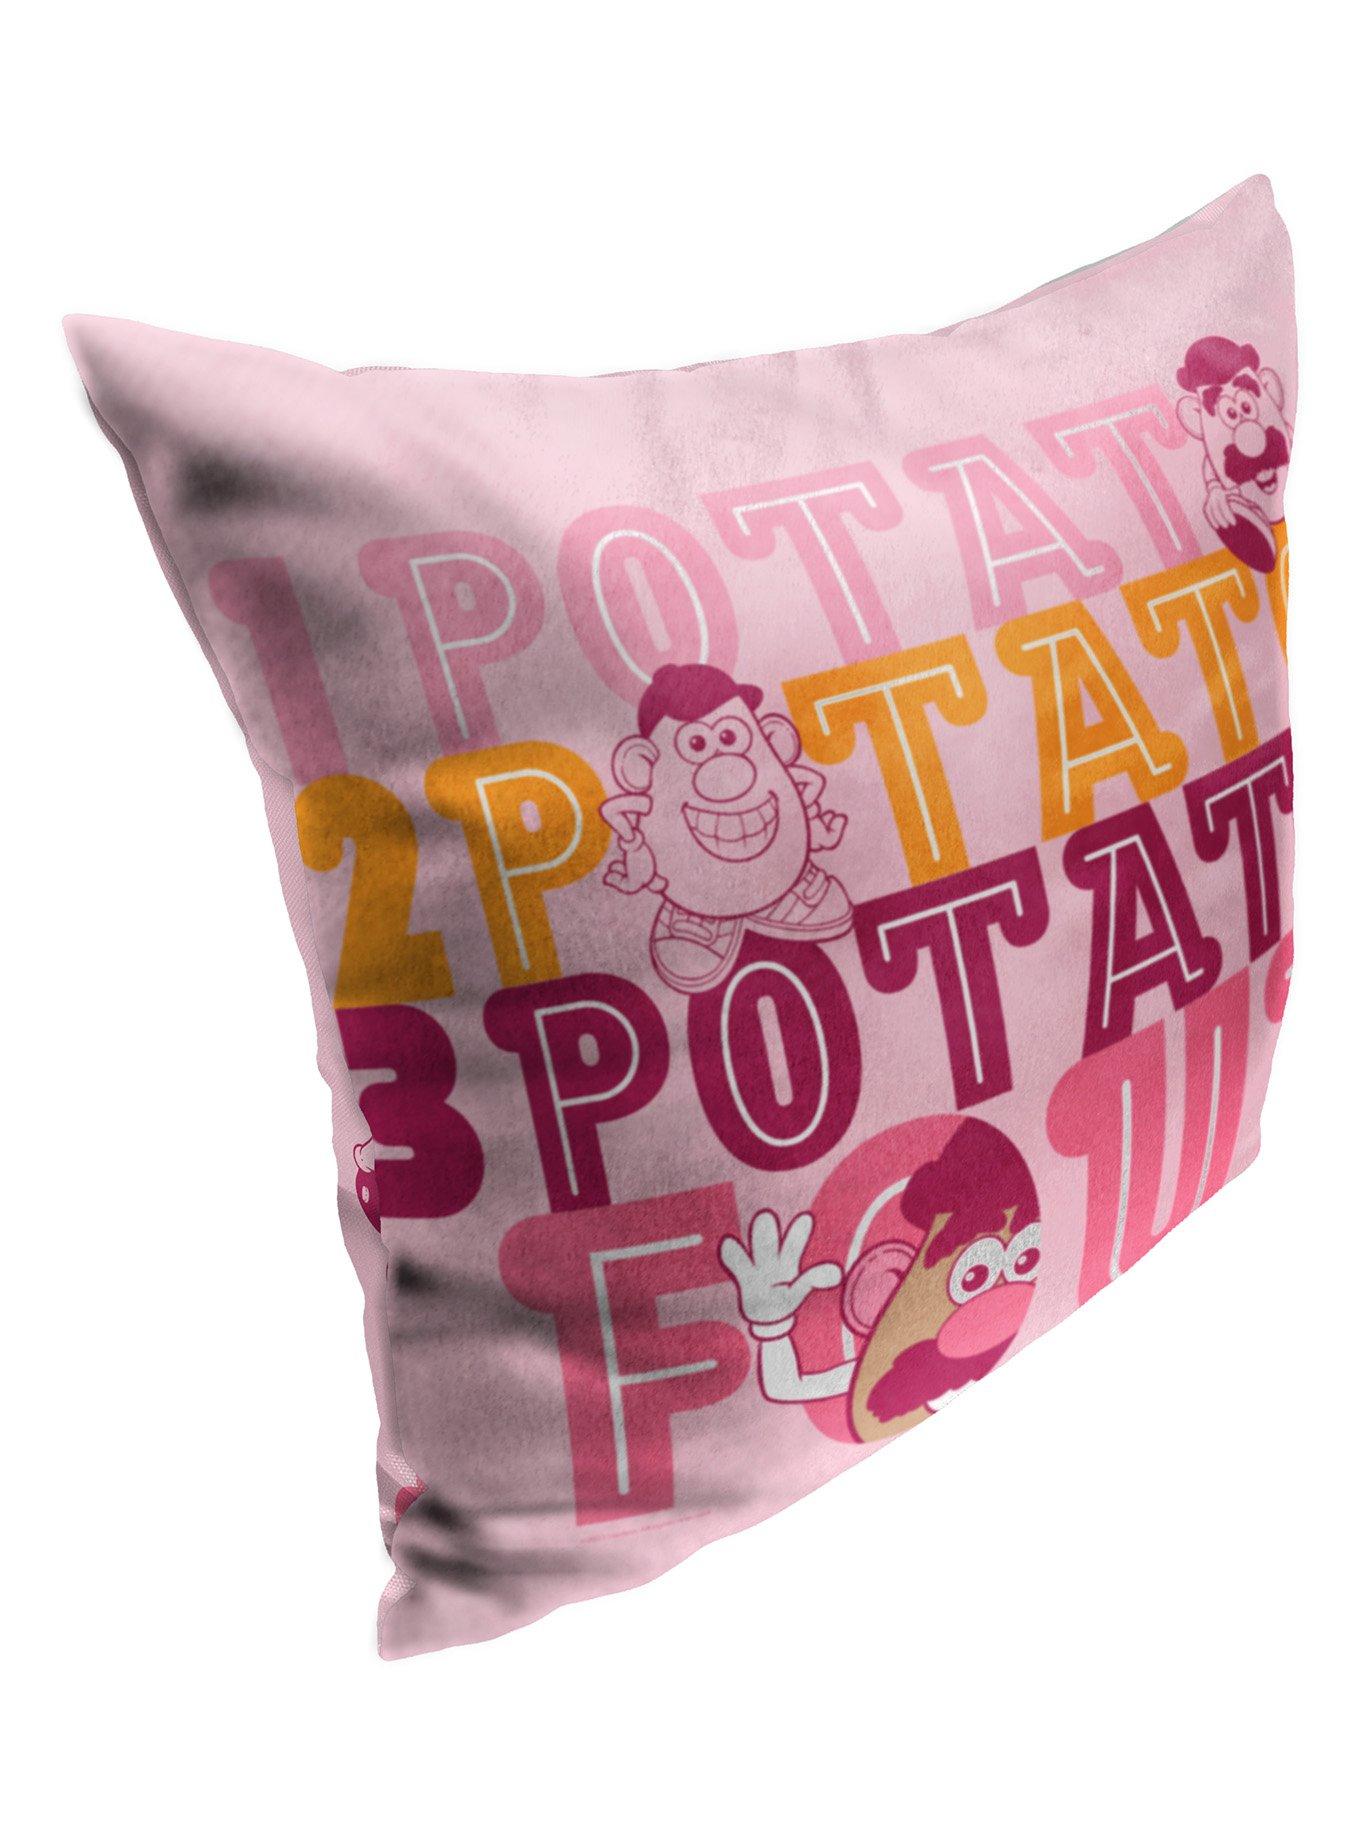 Disney Pixar Toy Story Mr Potato Head For Potato Printed Throw Pillow, , alternate